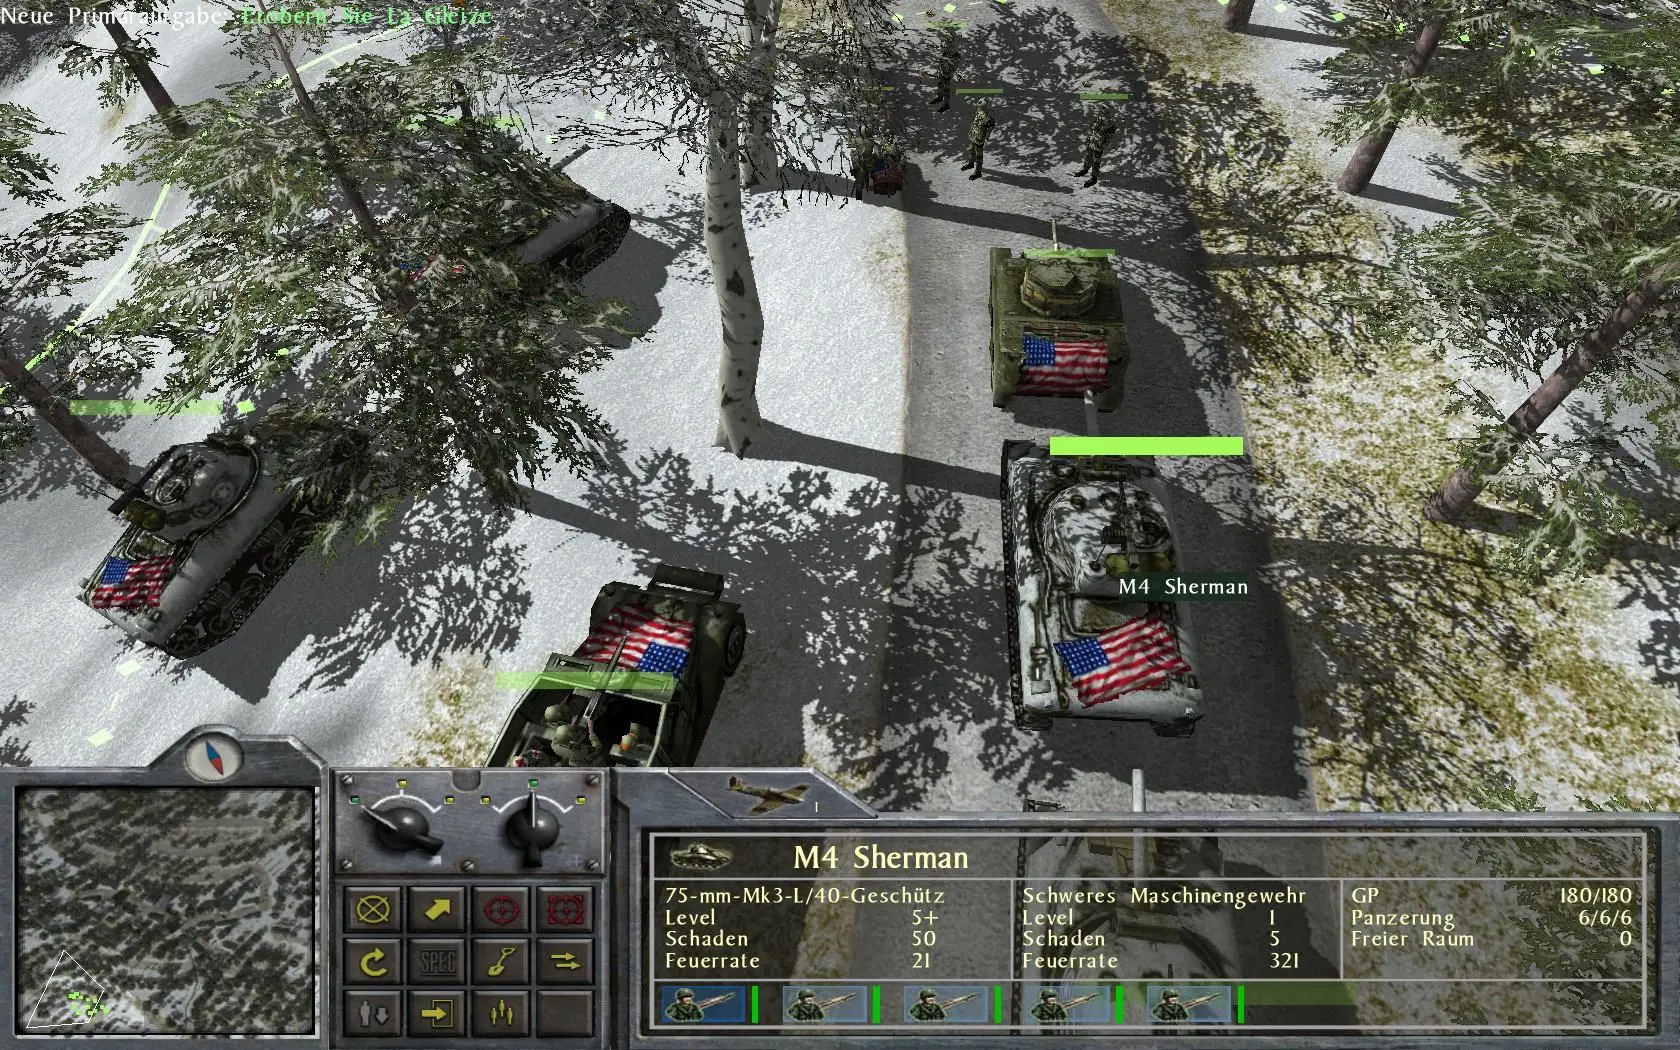 دانلود بازی No Surrender: 1944 Battle of the Bulge برای کامپیوتر PC